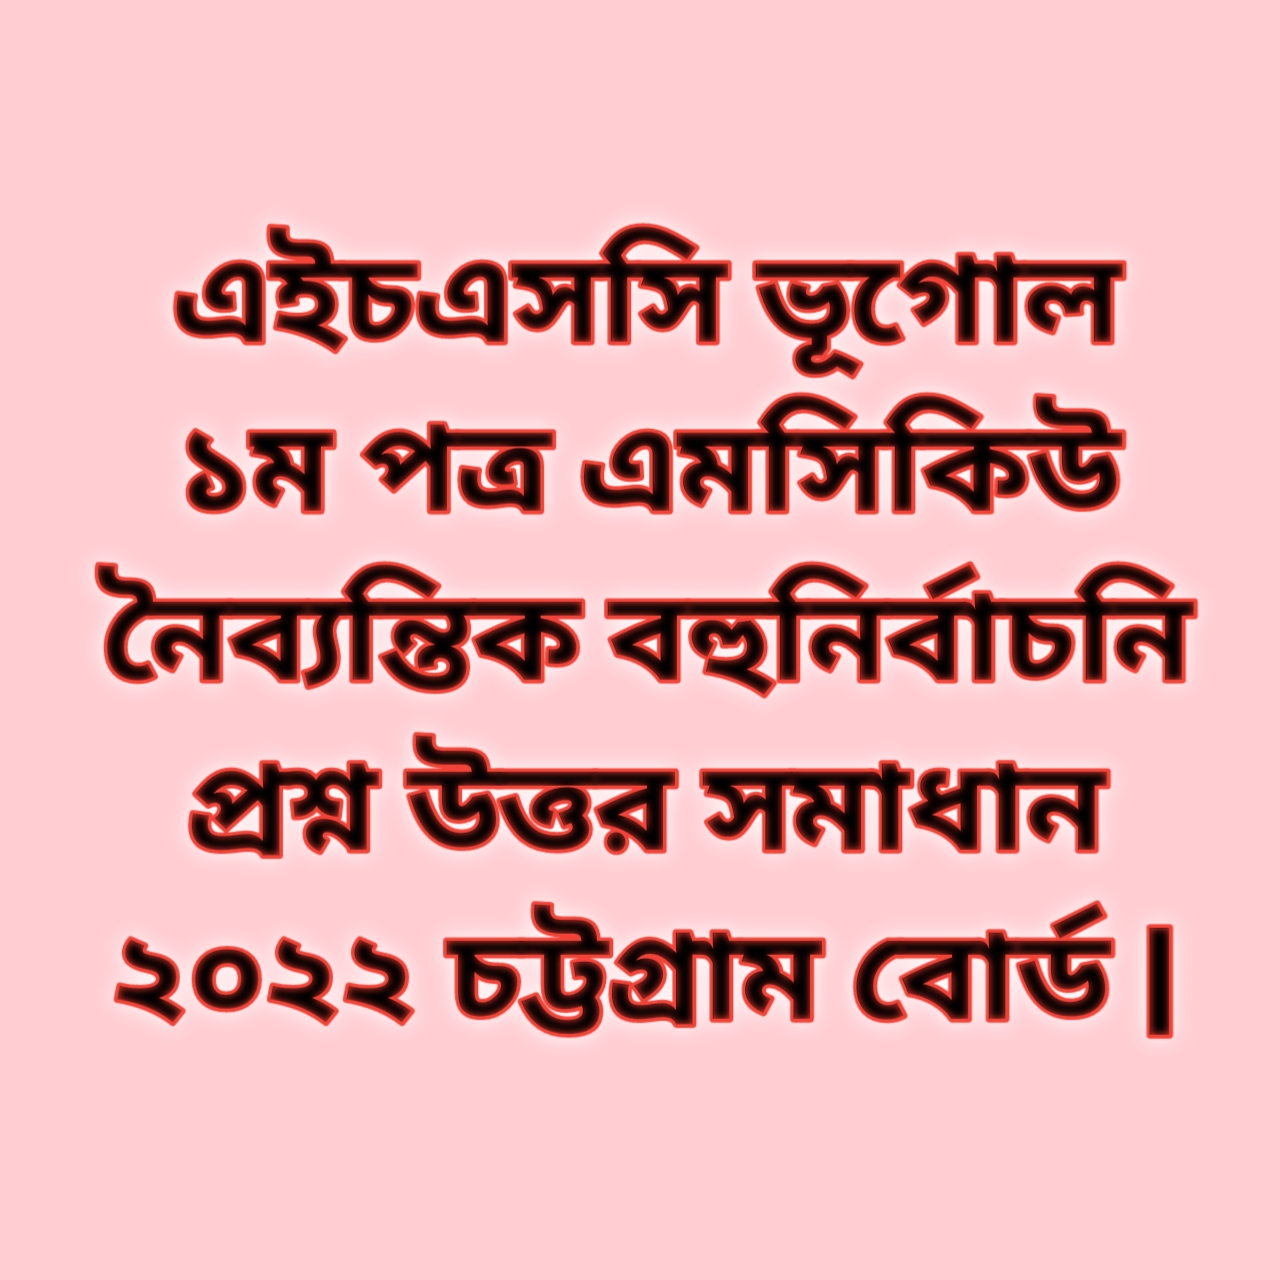 এইচএসসি ভূগোল ১ম পত্র এমসিকিউ নৈব্যন্তিক বহুনির্বাচনি প্রশ্ন উত্তর সমাধান ২০২২ চট্টগ্রাম বোর্ড | hsc logic 1st paper mcq question solution answer 2022 Chittagong Board